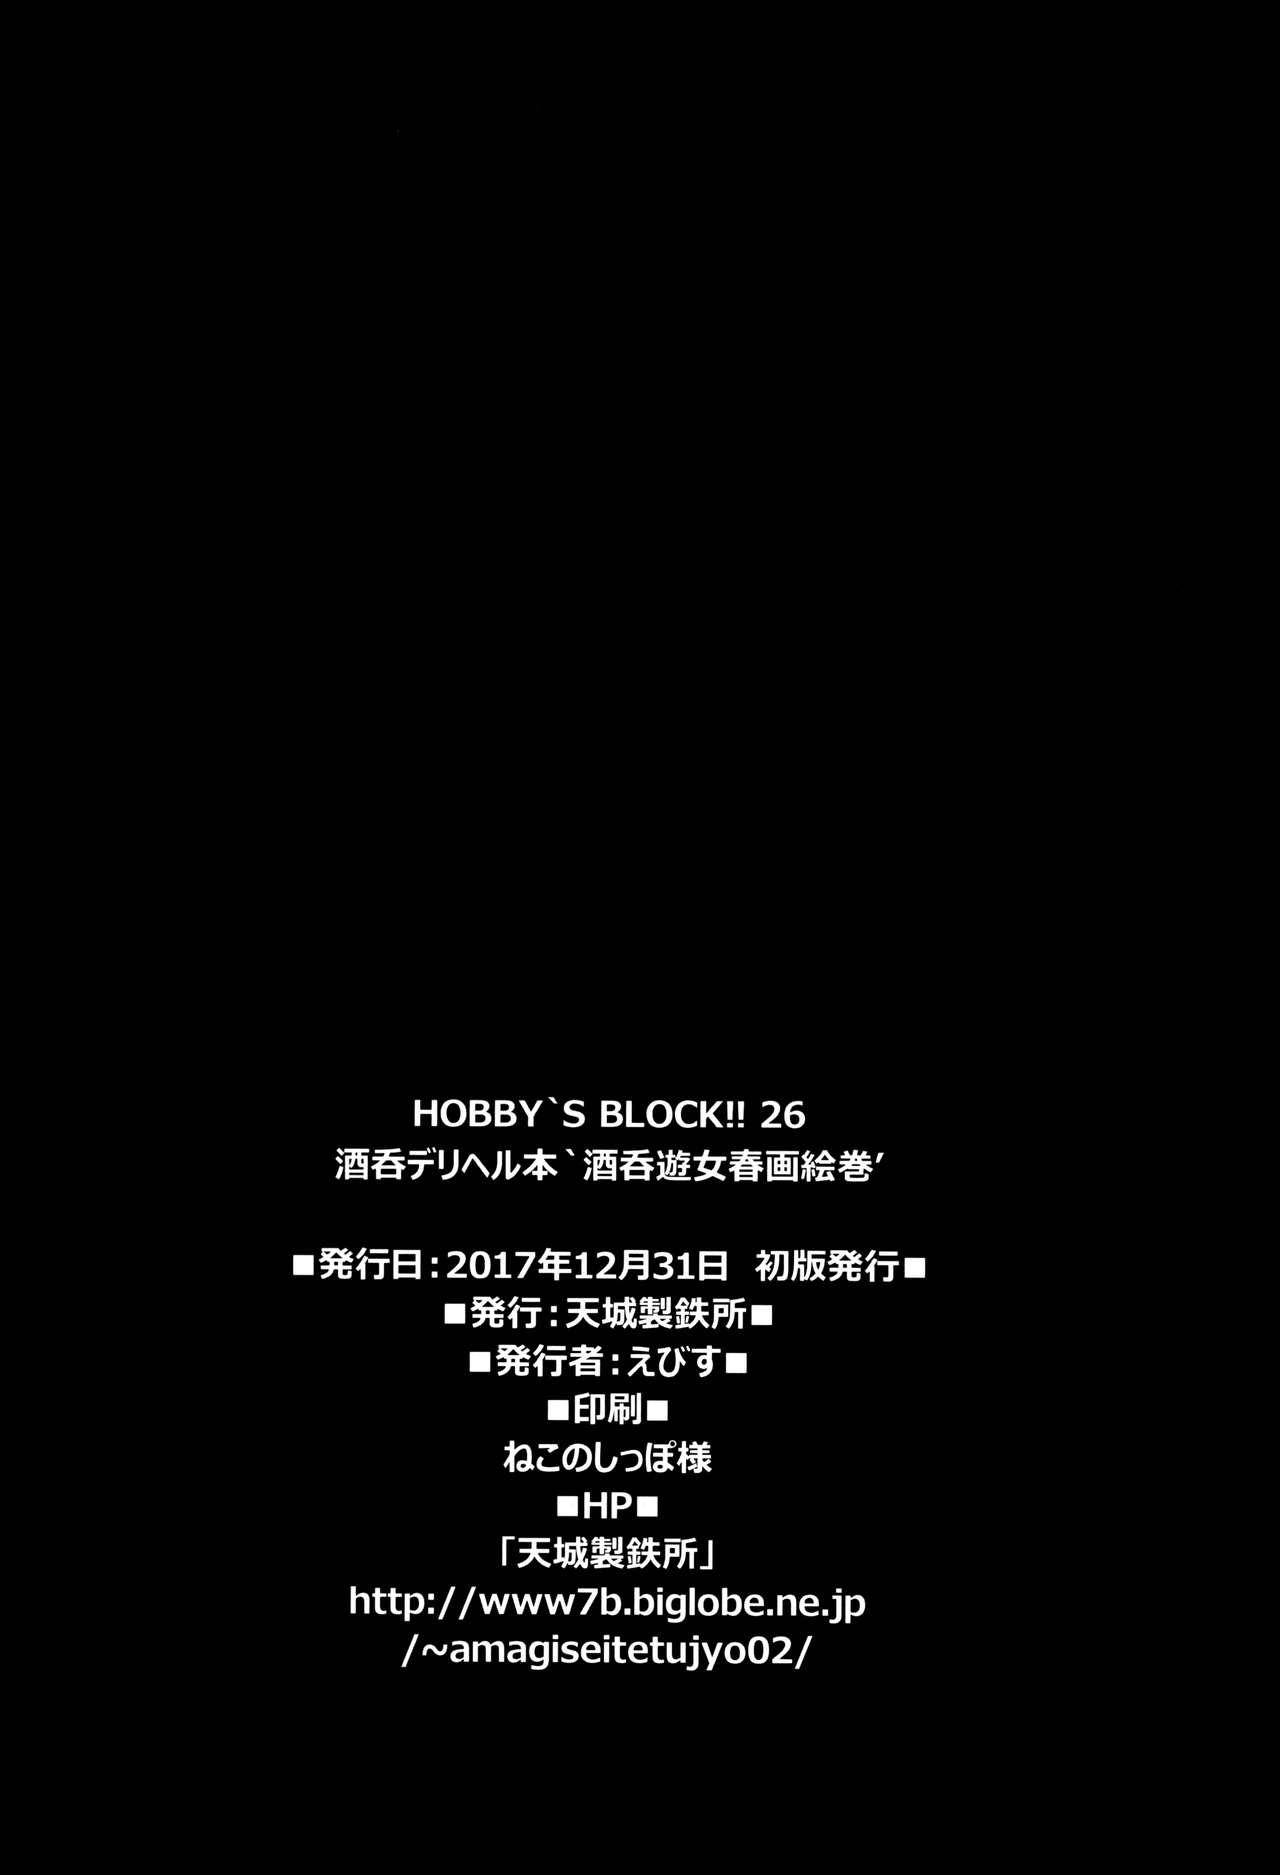 HOBBY'S BLOCK!!26 29